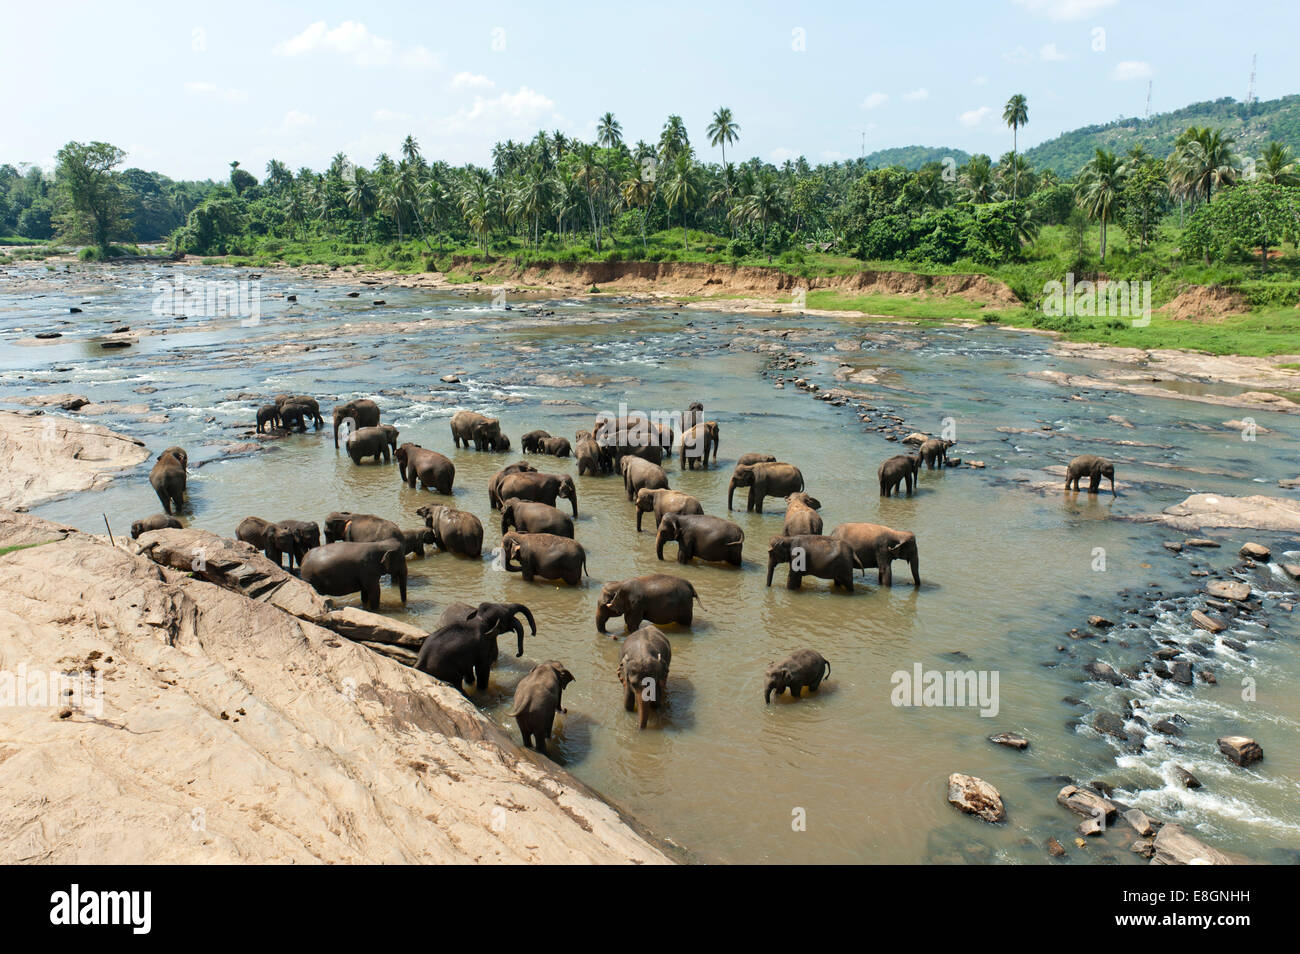 Groupe d'éléphants d'Asie (Elephas maximus) par la rivière, province de Sabaragamuwa, Pinnawala, Sri Lanka Banque D'Images